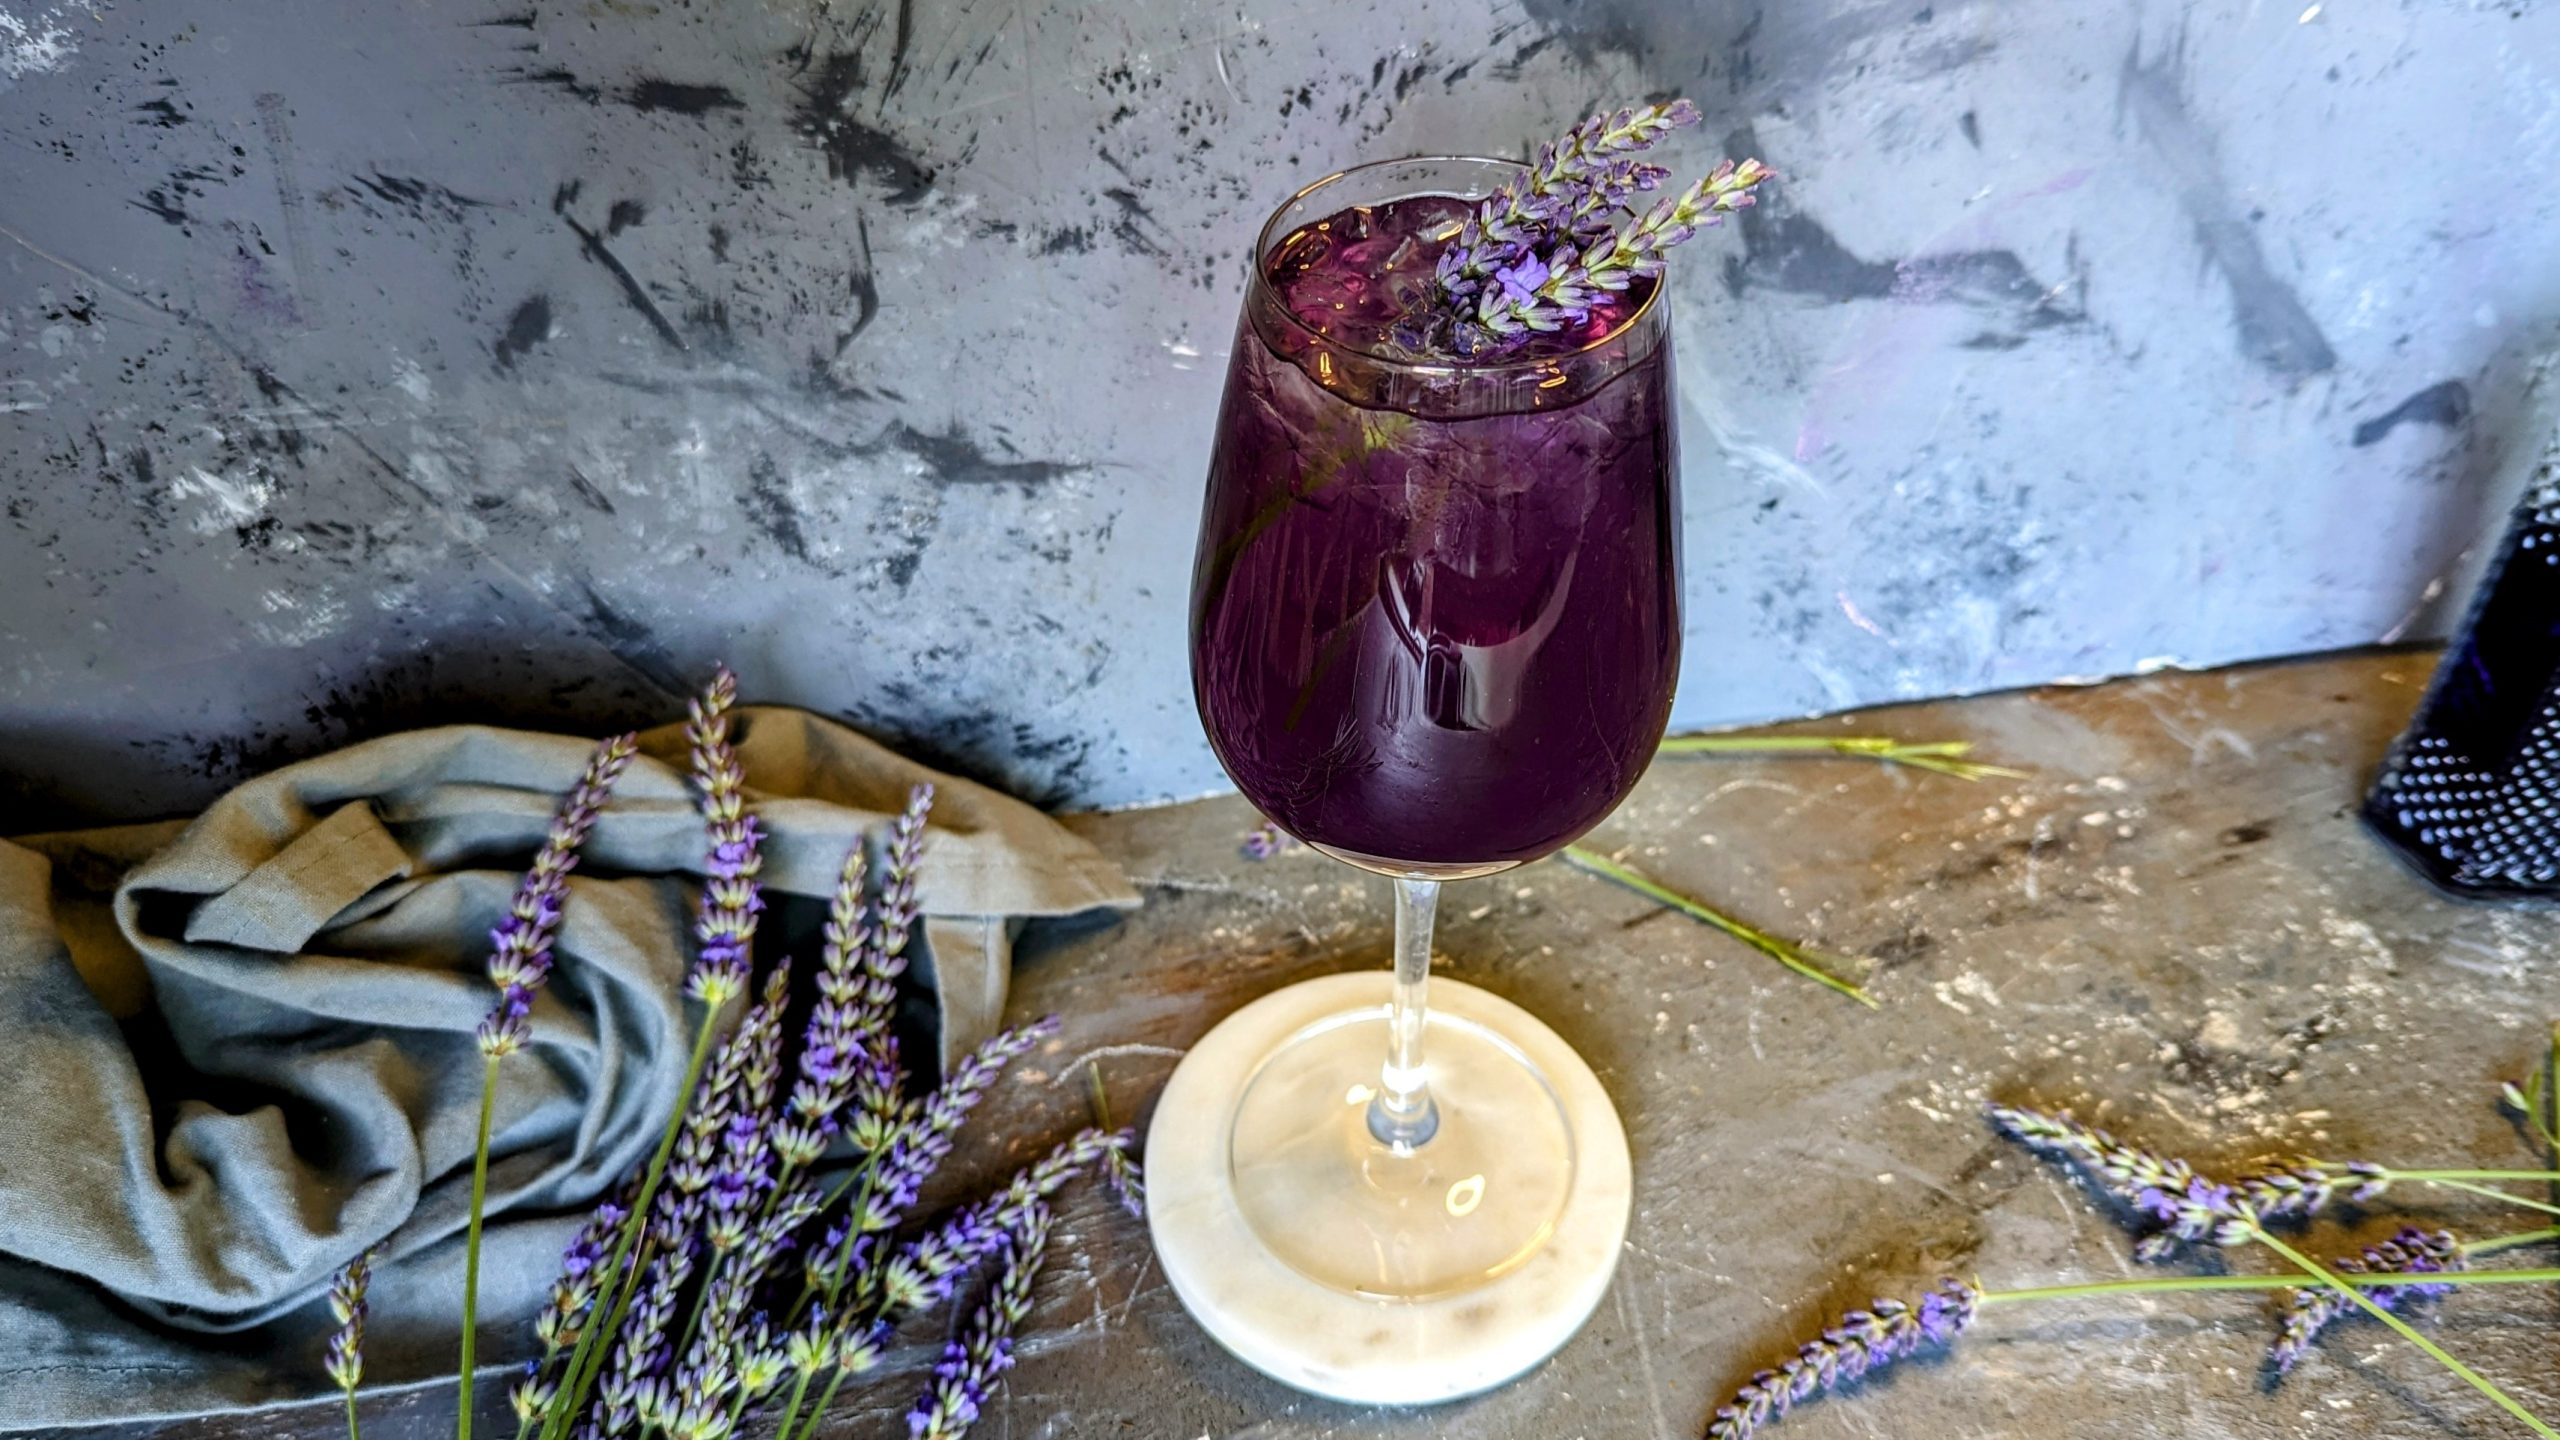 Ein Glas mit dem Lavendel Spritz auf grauem Untergrund mit frischen Lavendelzweigen und einem grauen Tuch. Alles von schräg oben fotografiert.